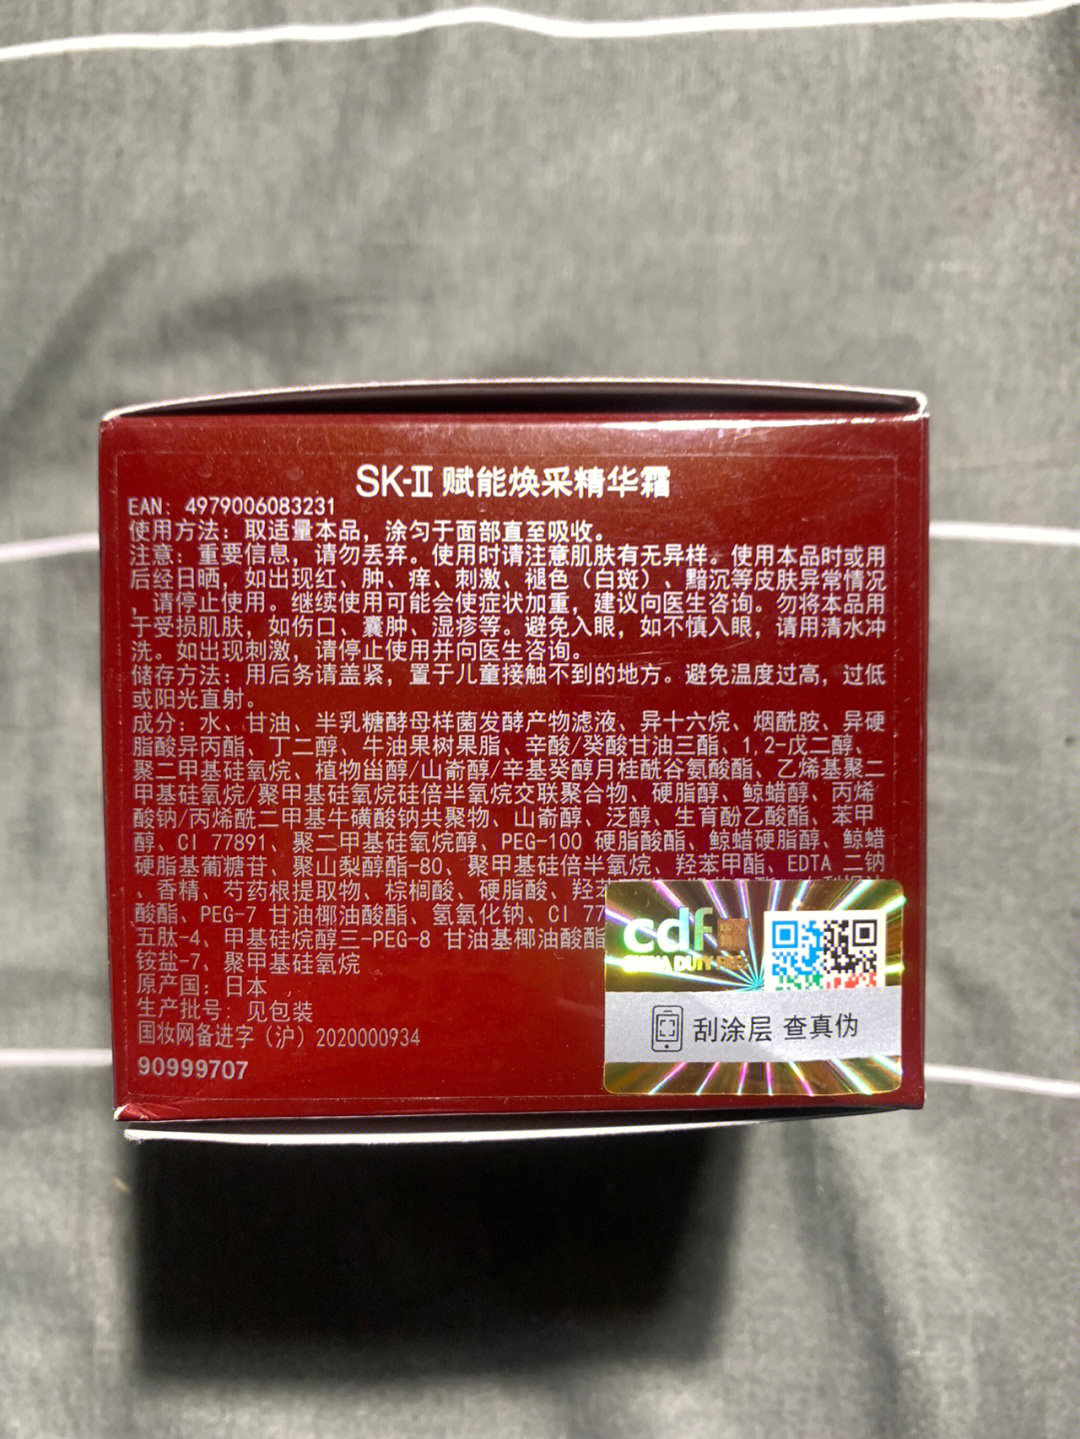 skii大红瓶面霜成分表图片